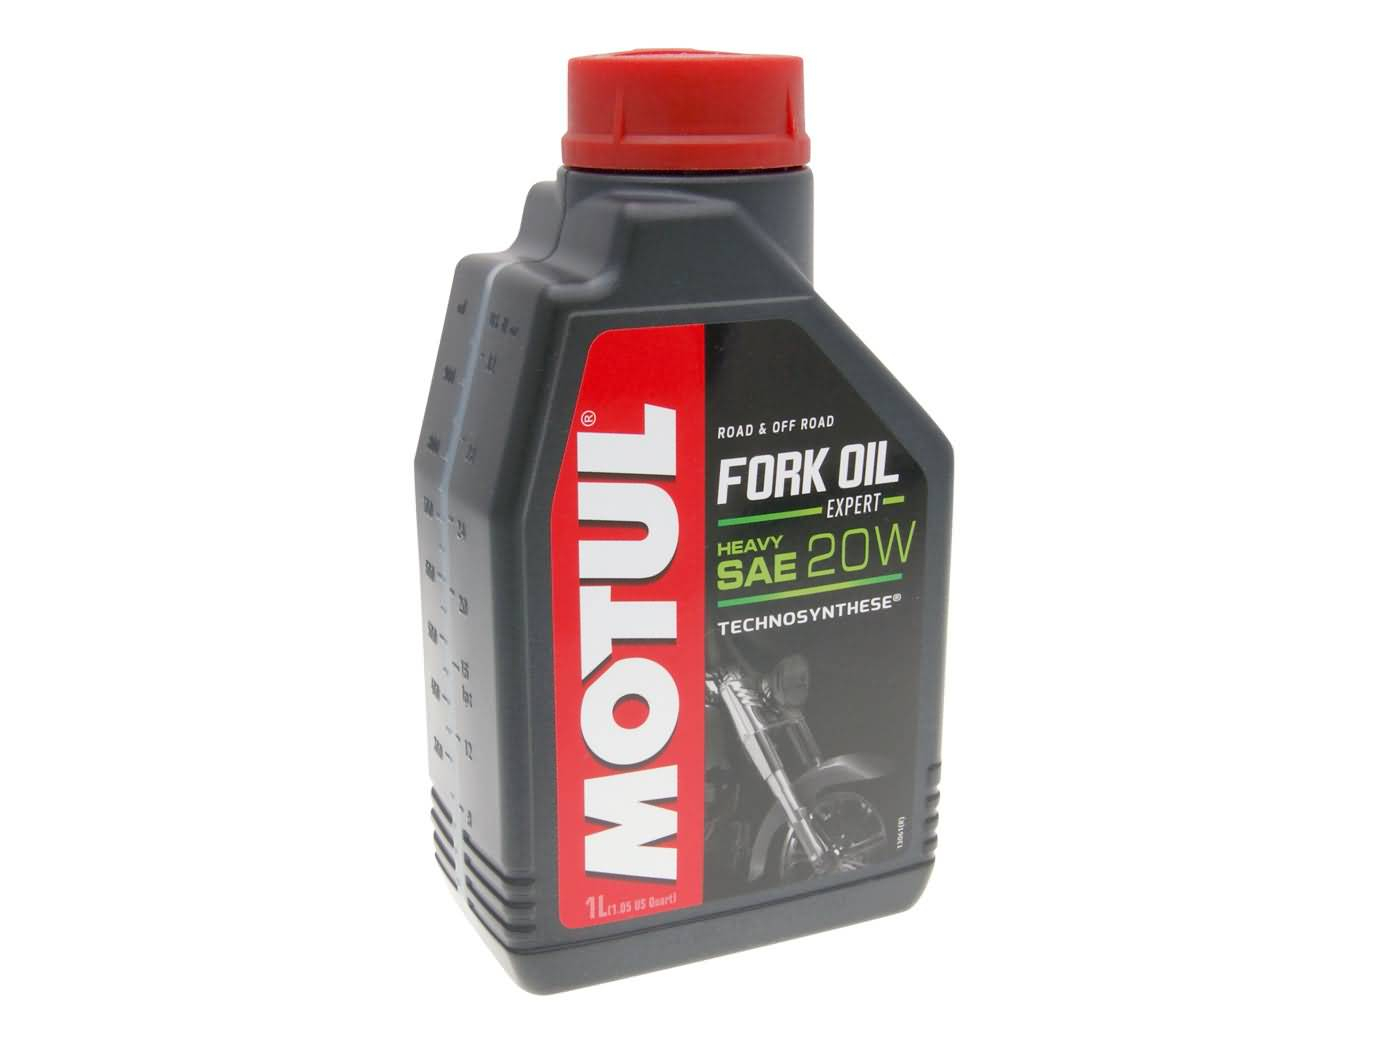 Motul Fork Oil Heavy 20W Expert TS 1 Liter